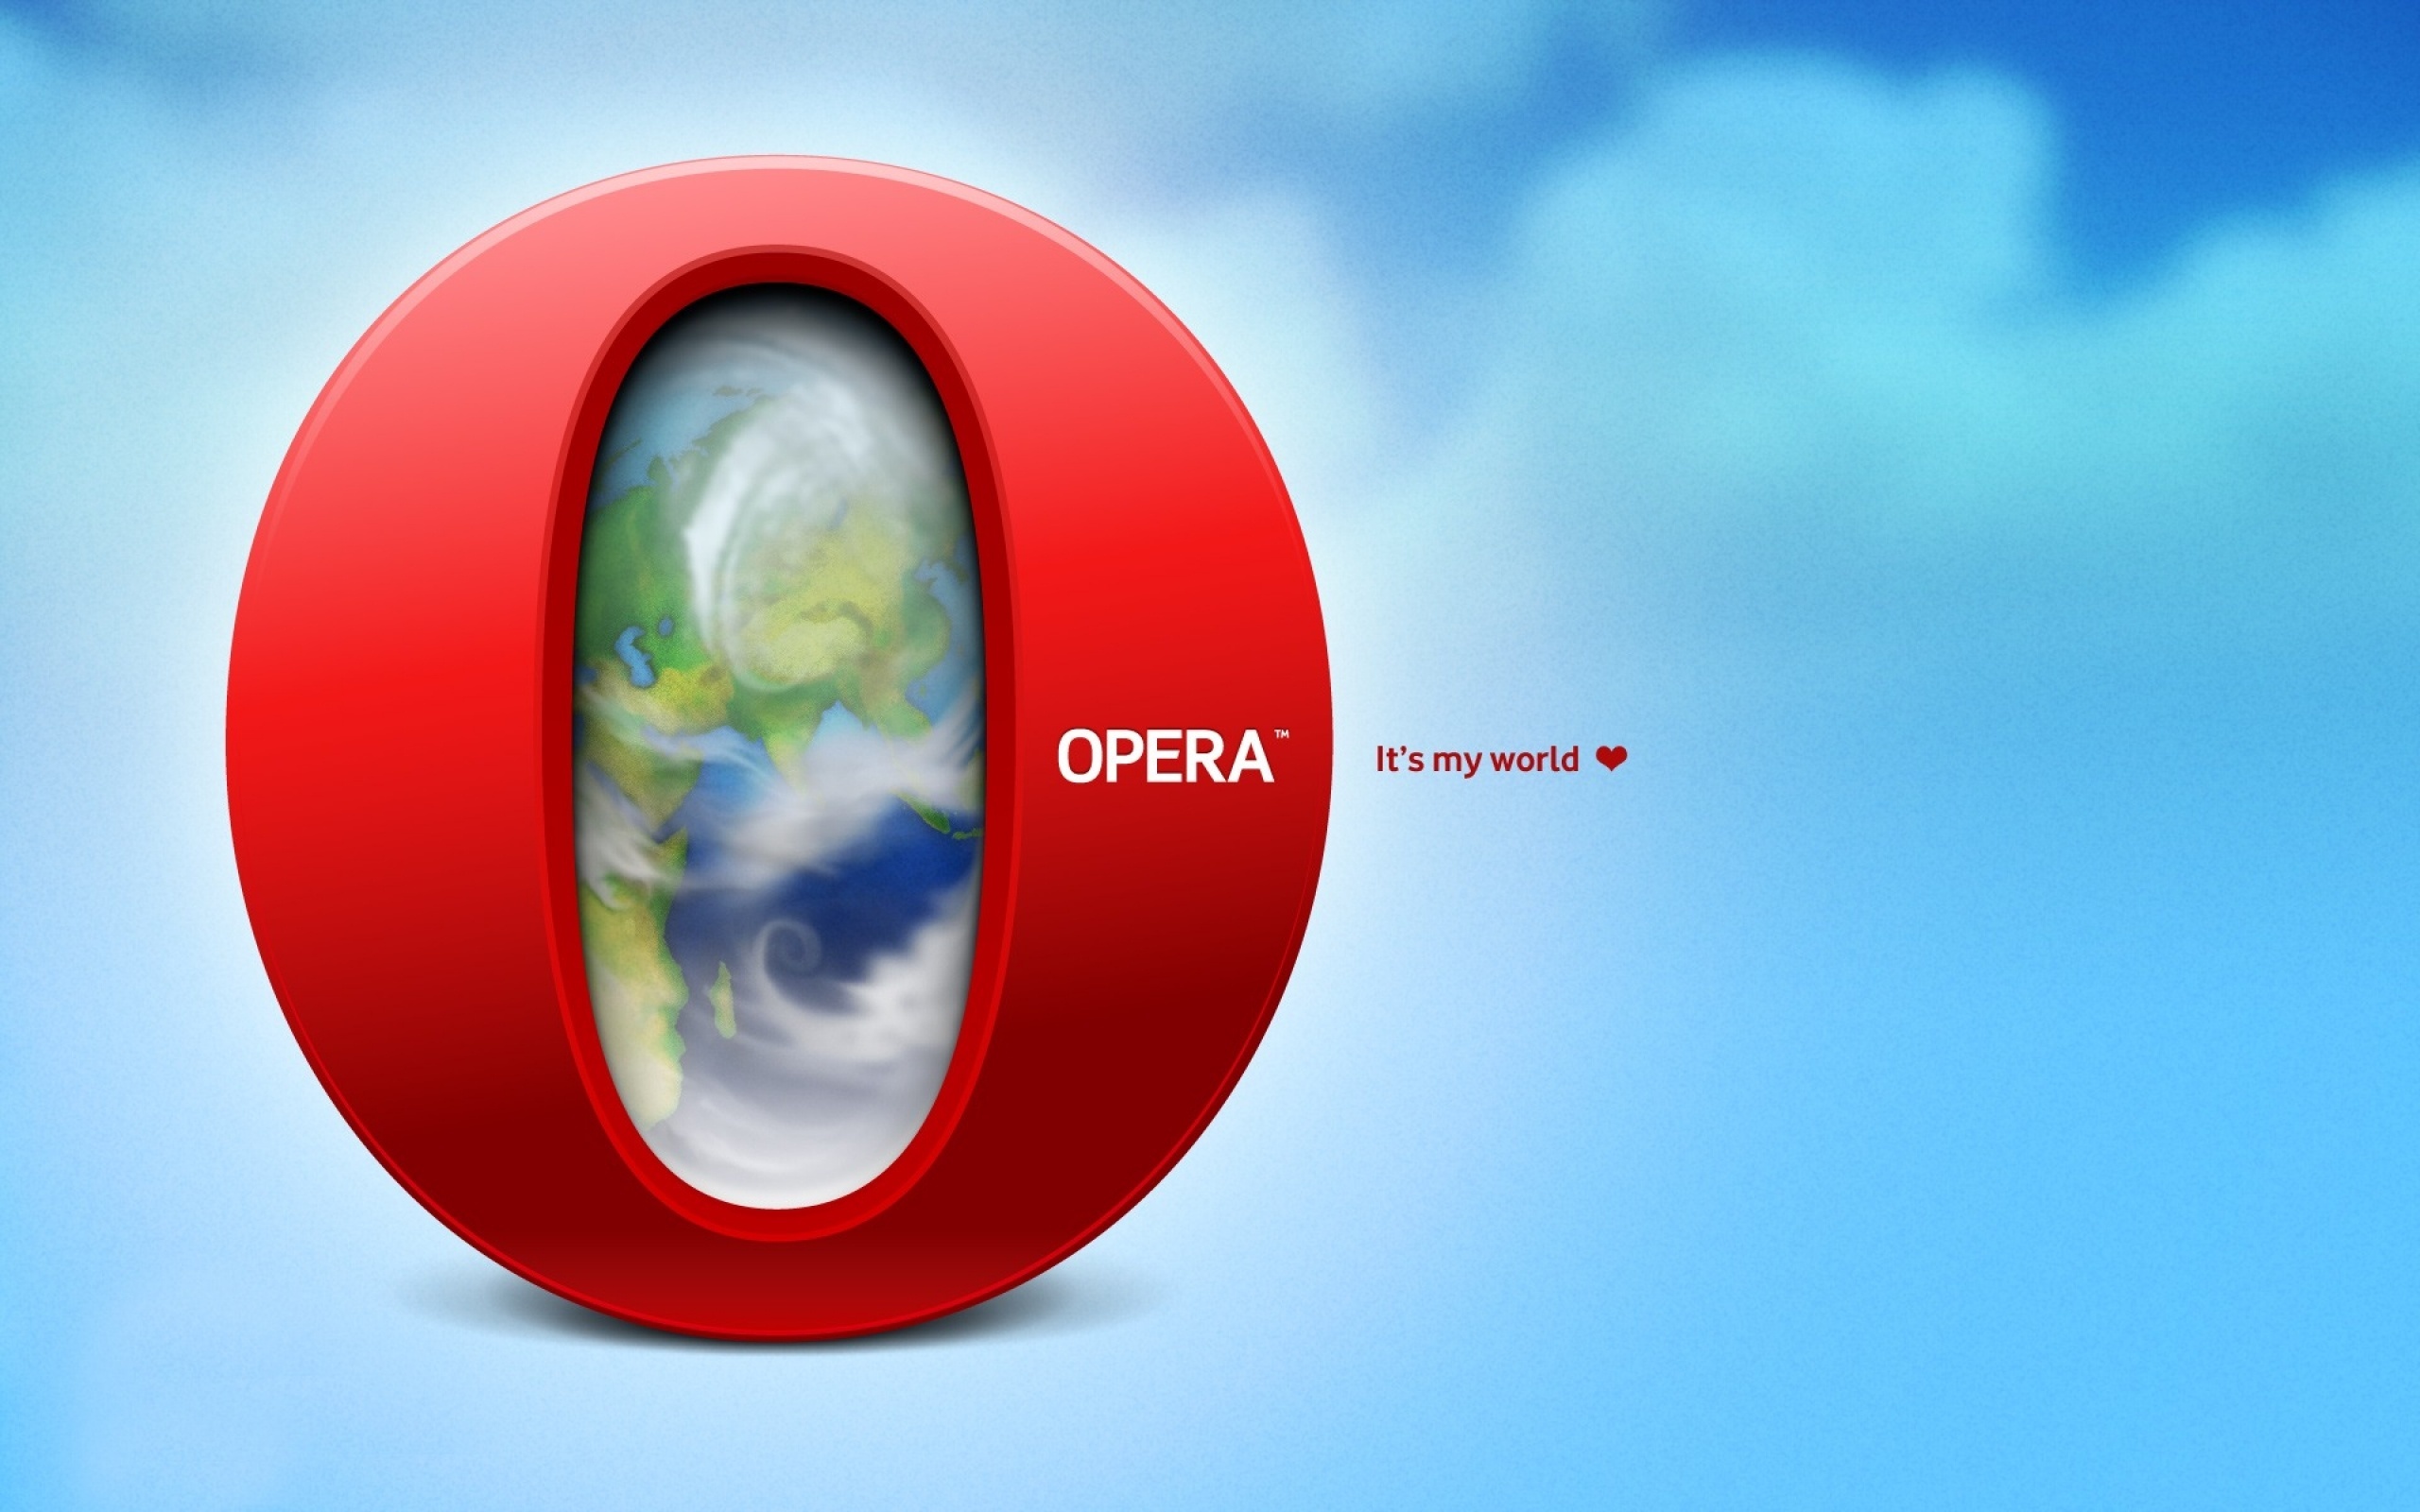 technology, opera